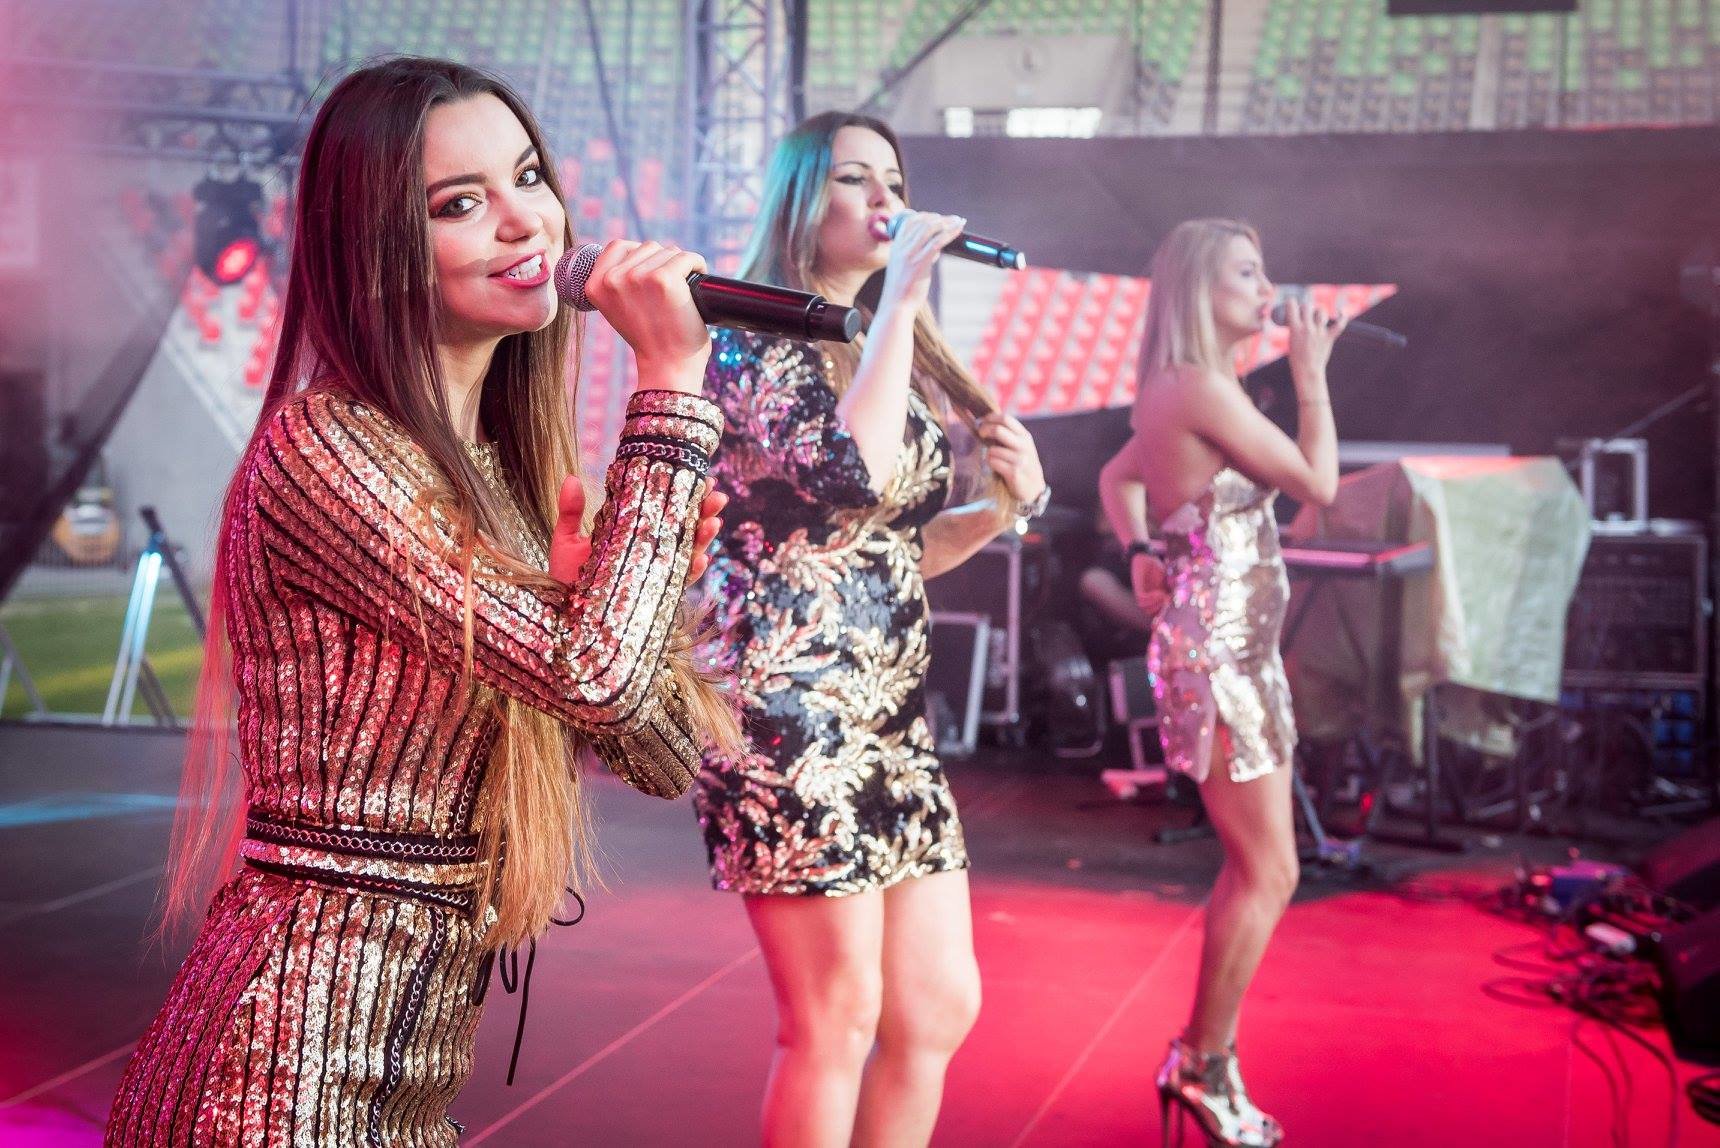 Top Girls szykują nowość, która podbije rynek disco polo? Rok 2019 będzie należał do przepięknych wokalistek?!